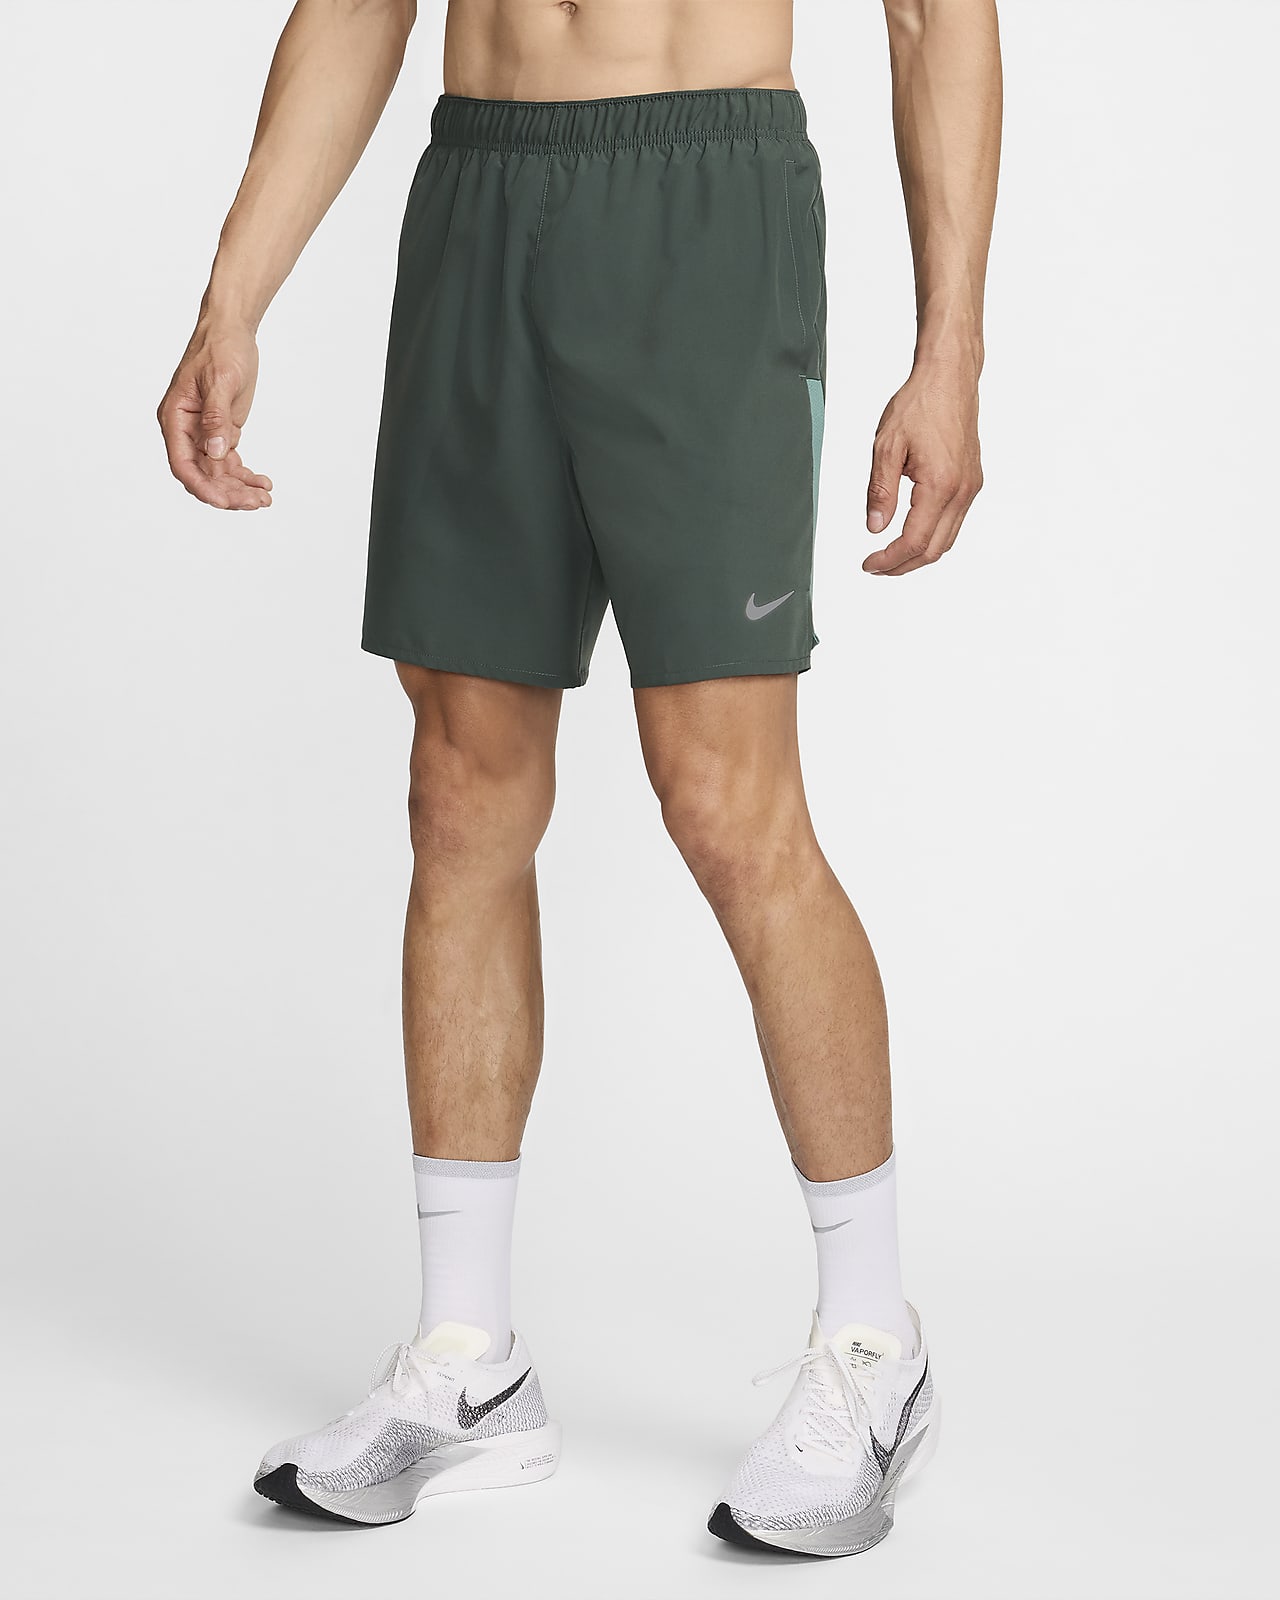 Calções de running forrados com slips de 18 cm Dri-FIT Nike Challenger para homem